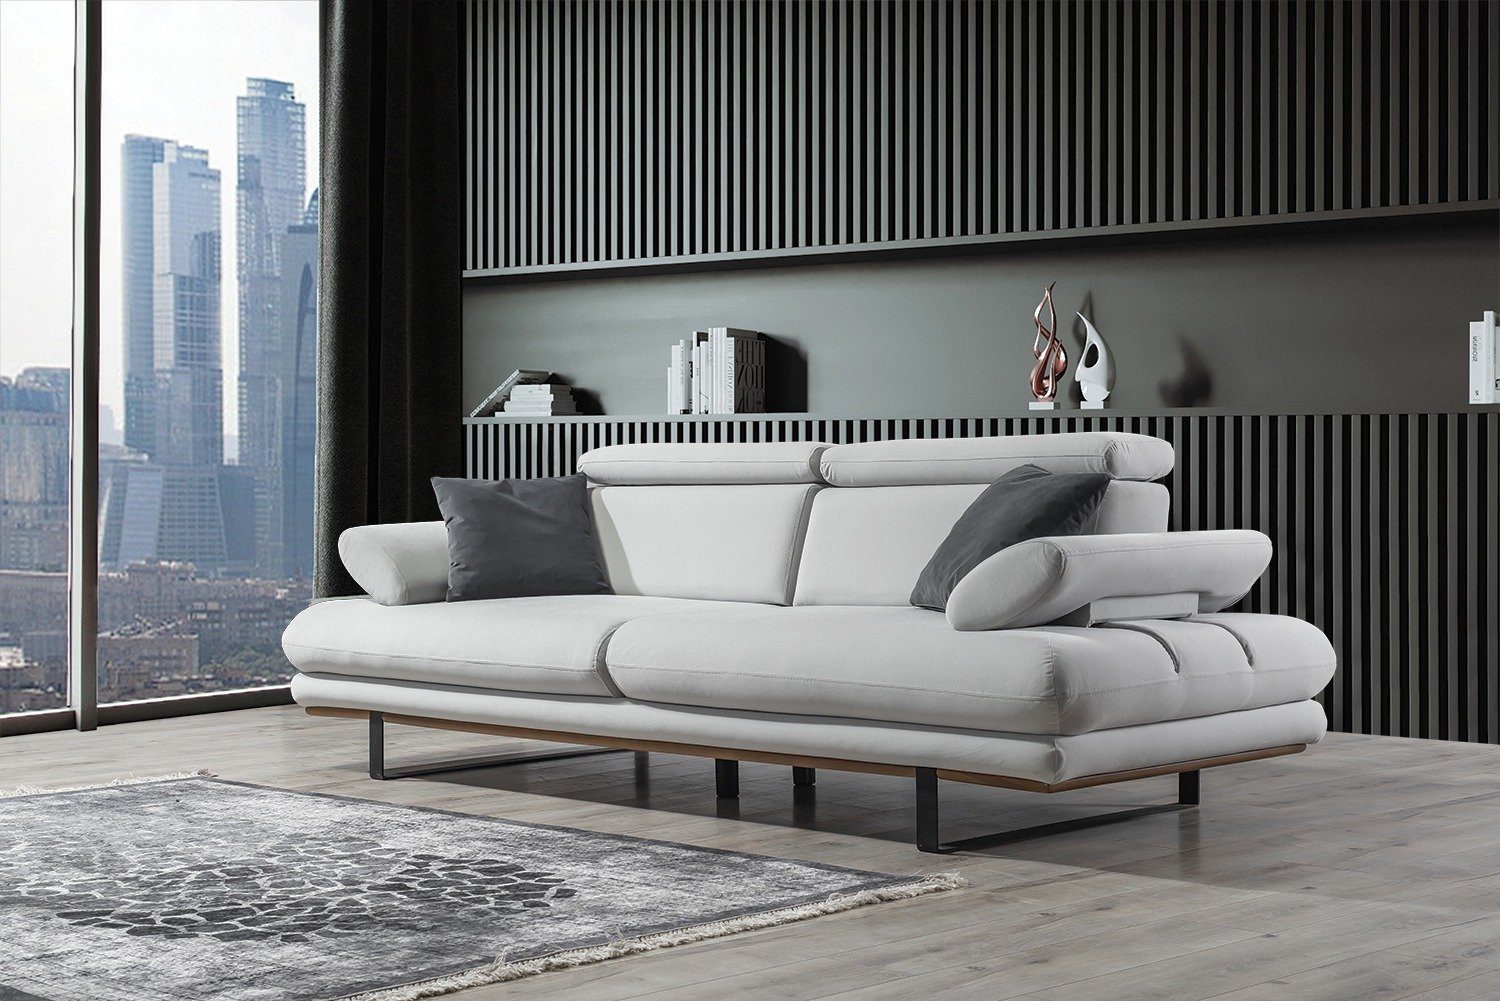 Villa Möbel Sofa Energy, 1 Stk. 2-Sitzer, Quality Made in Turkey, stylische Sitztiefen- und Armlehnenverstellung Seidengrau